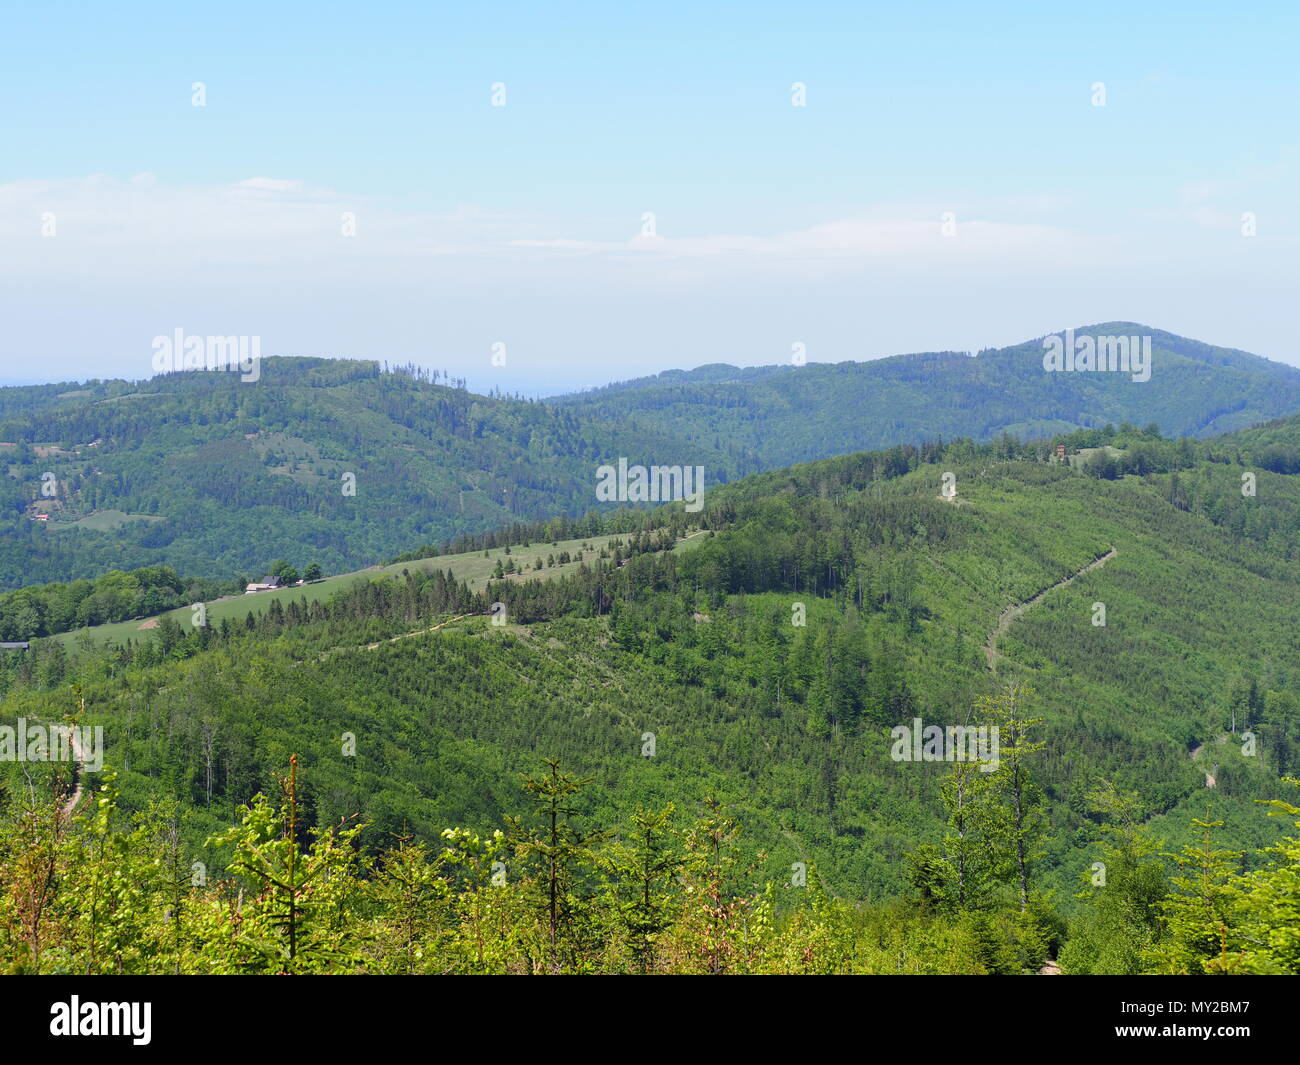 Brilliante Salmopol Pass in der Nähe von Mount Kotarz in Schlesischen Beskiden Reihe Landschaften in der Nähe von europäischen Stadt Szczyrk in Polen mit klarem, blauem Himmel in Stockfoto